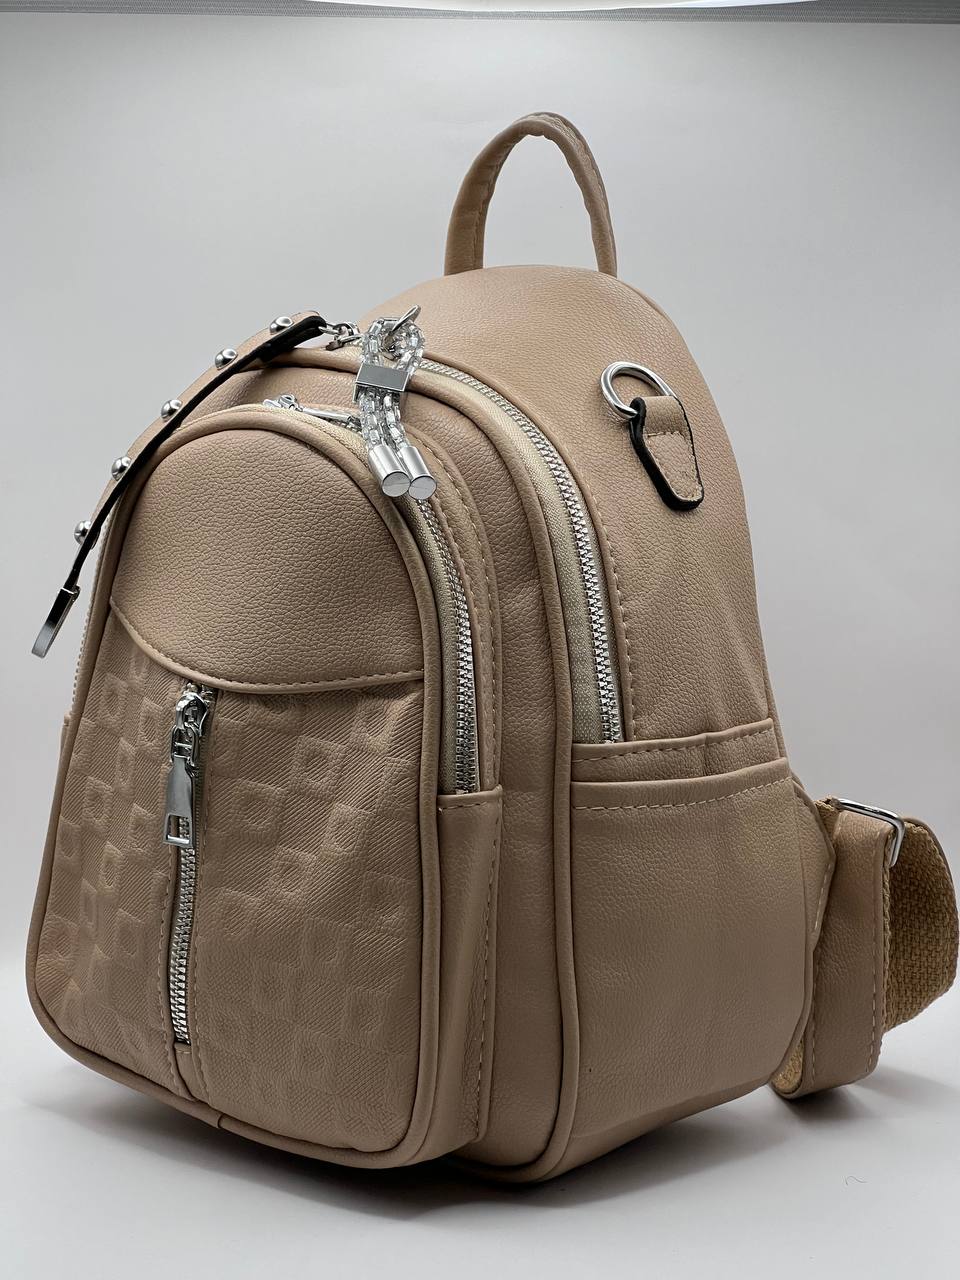 Сумка-рюкзак женская SunGold Р-80101 бежевая, 27х22х12 см